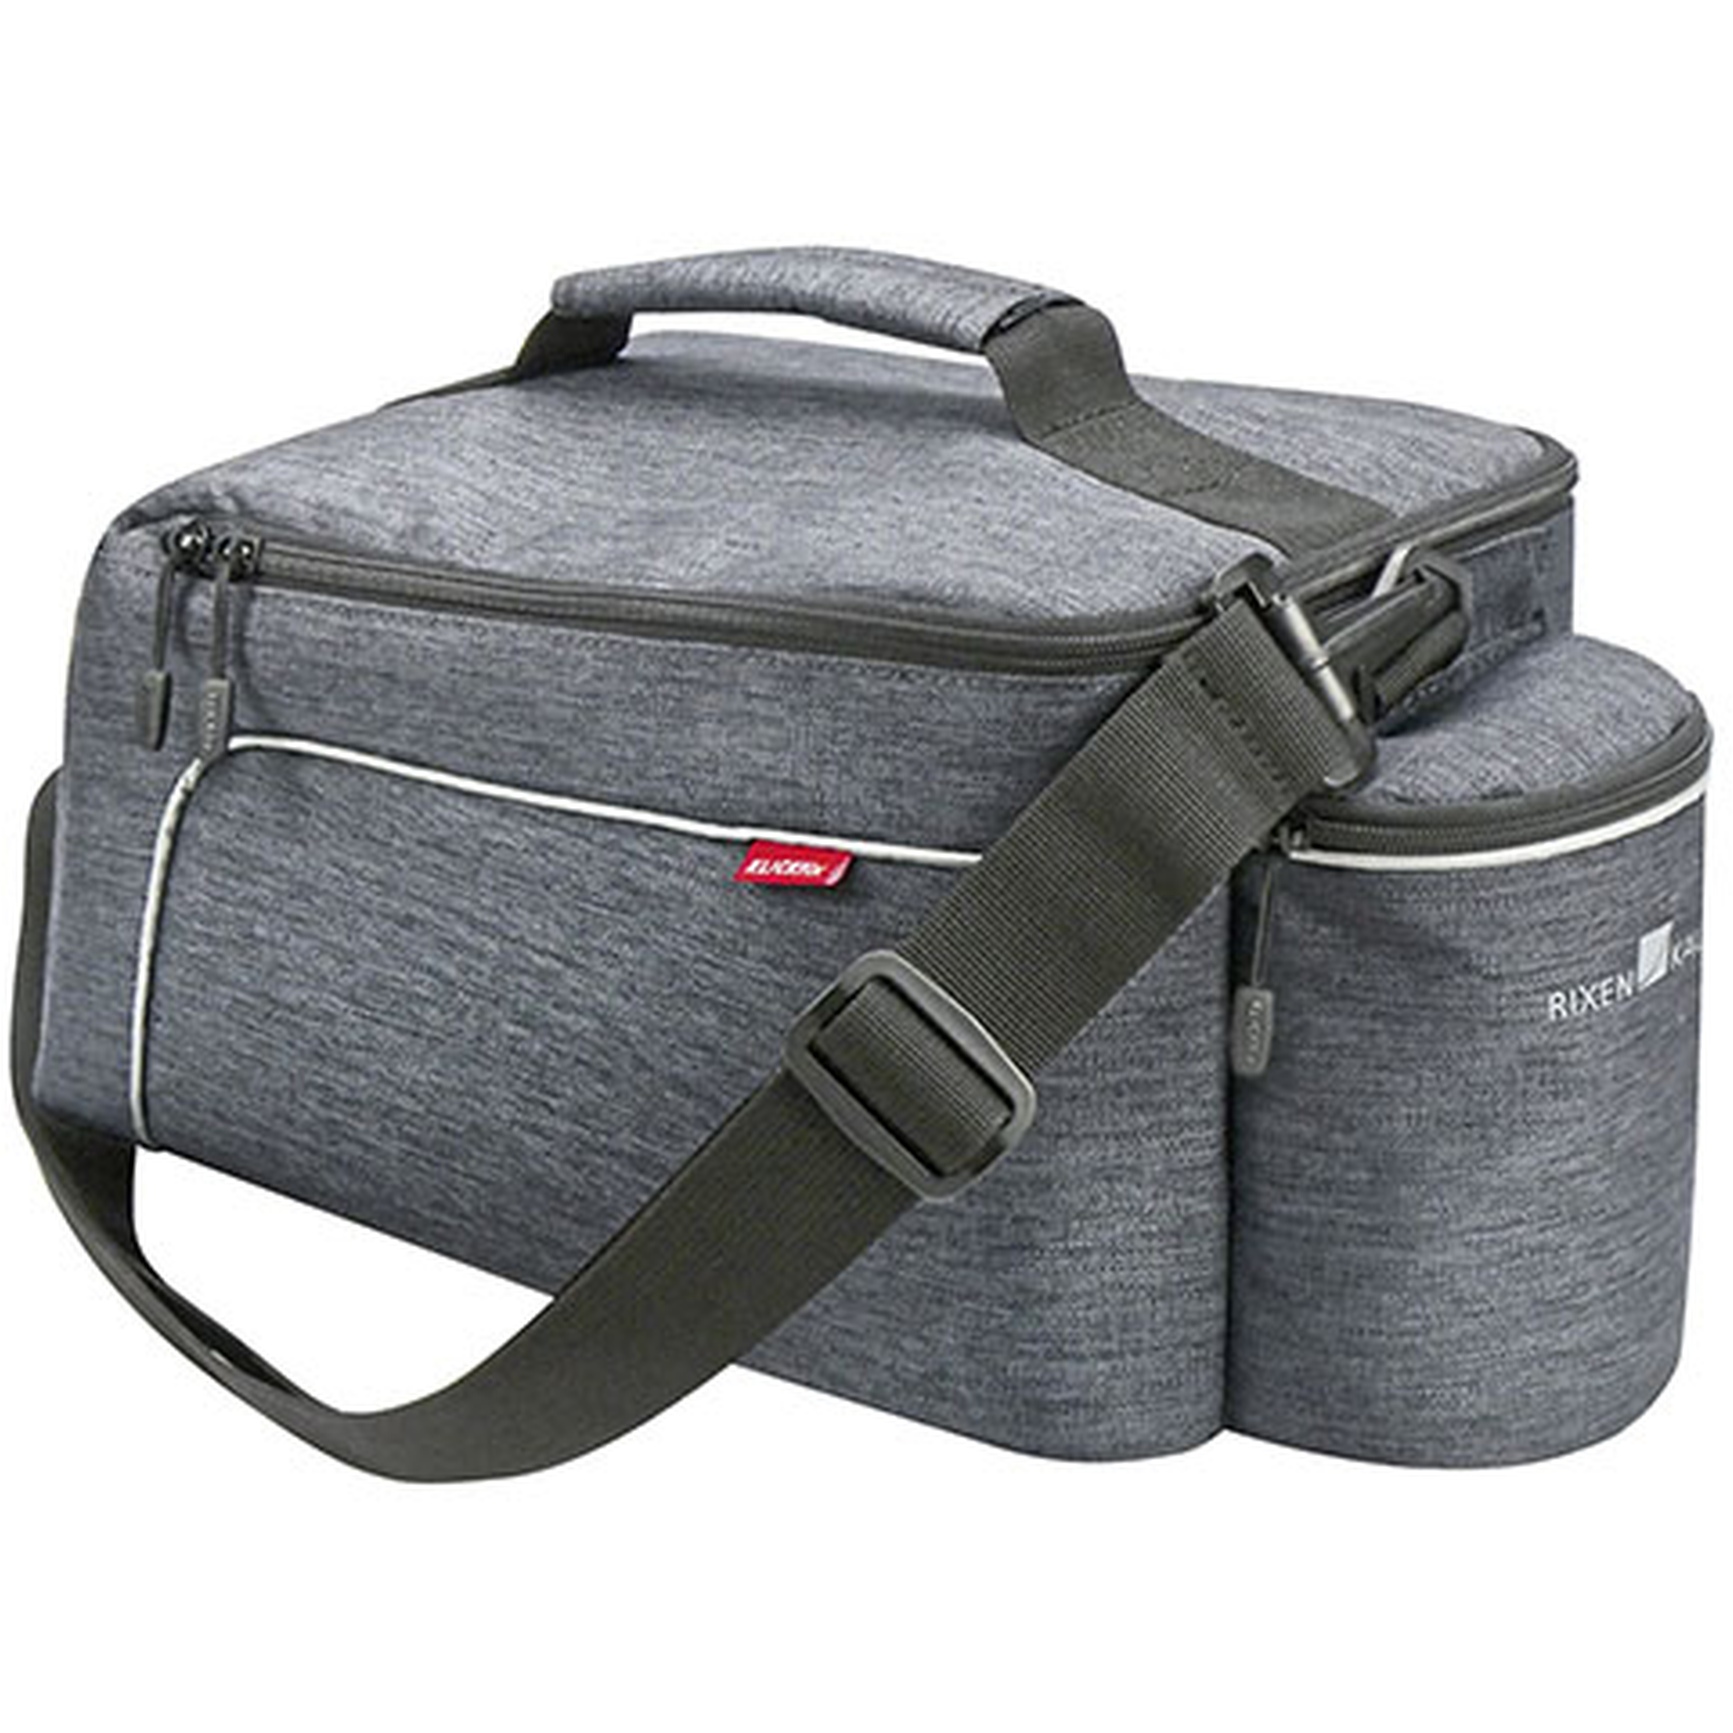 Produktbild von KLICKfix Rackpack Light Gepäckträgertasche für Racktime - grau